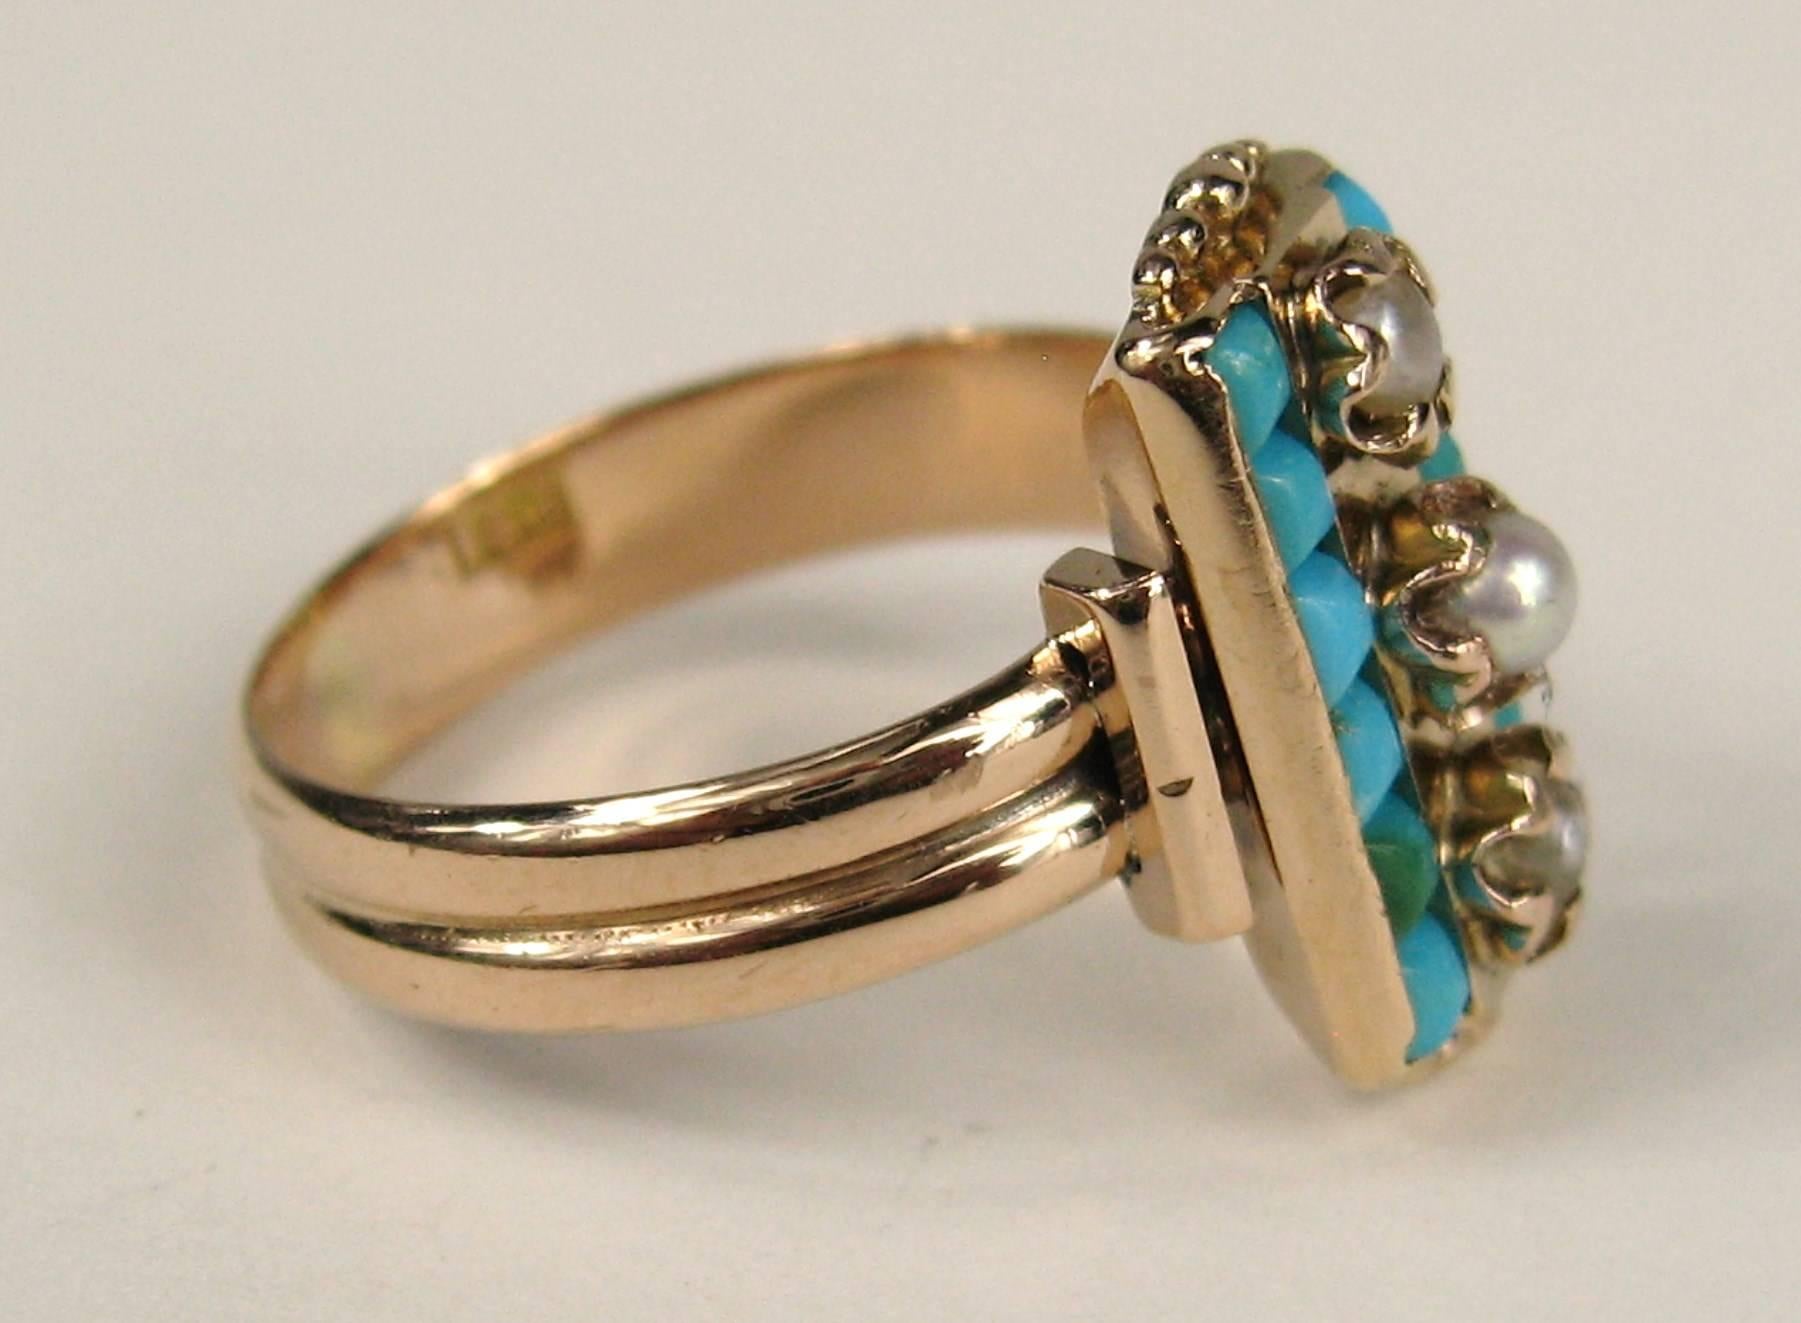 Dies ist atemberaubend in Person, 14k Rose Gold Ring mit Lünette gesetzt Türkis und 3 Perlen laufen in der Mitte. Der Ring ist auf der Innenseite des Bandes gestempelt. Ring misst eine 7-1/4 und kann von uns oder Ihrem Juwelier angepasst werden. Es